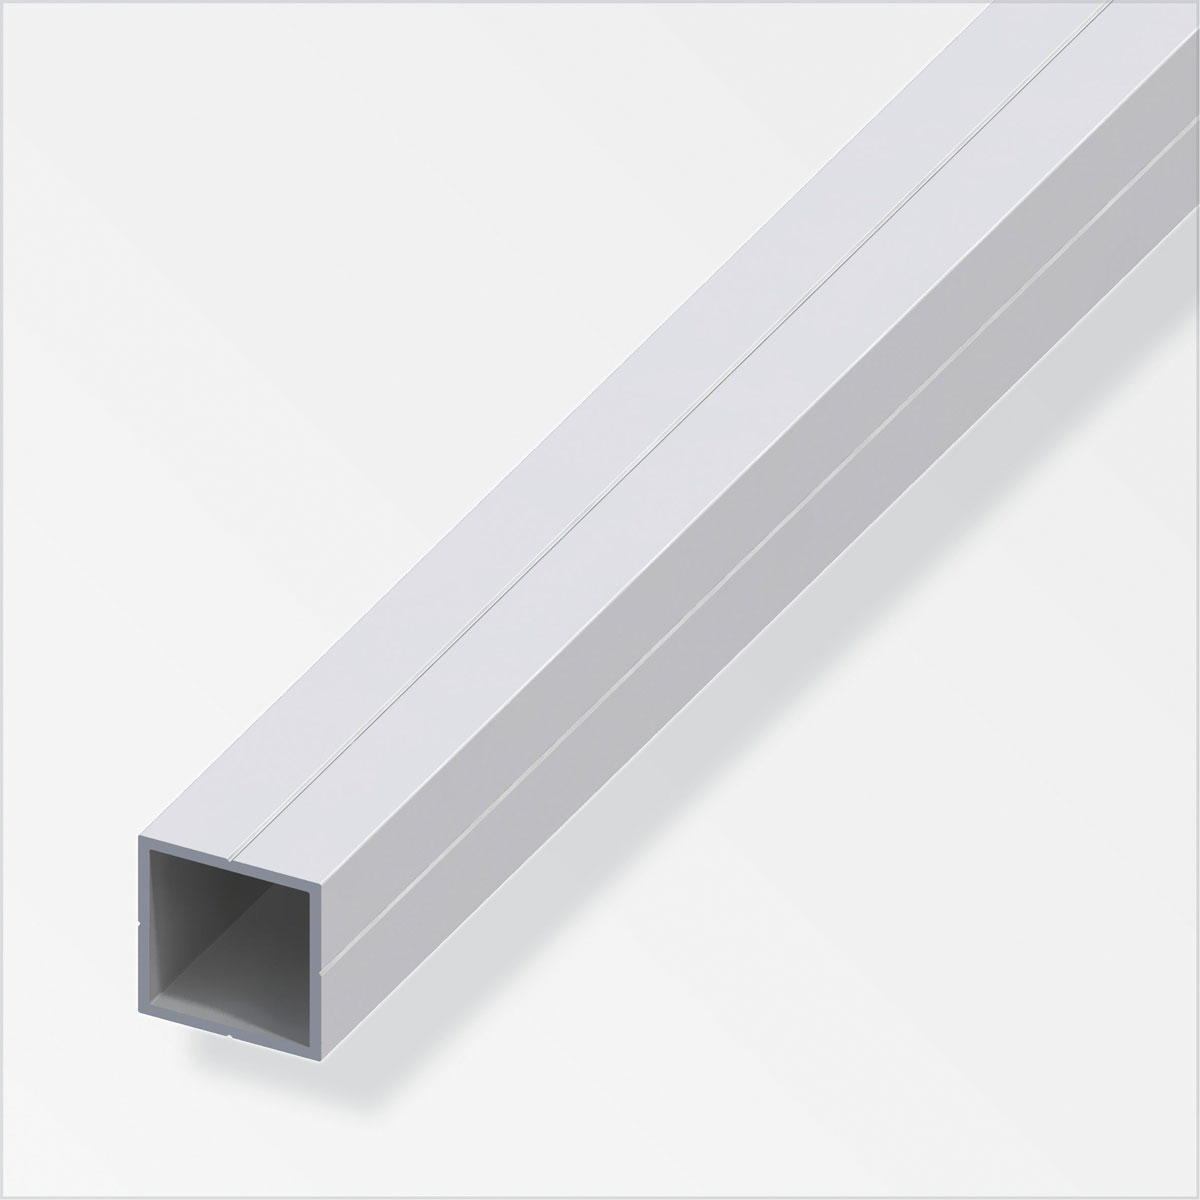 MyTool Kantenschutz-Profil 19 x 8 mm 1m silber, 100